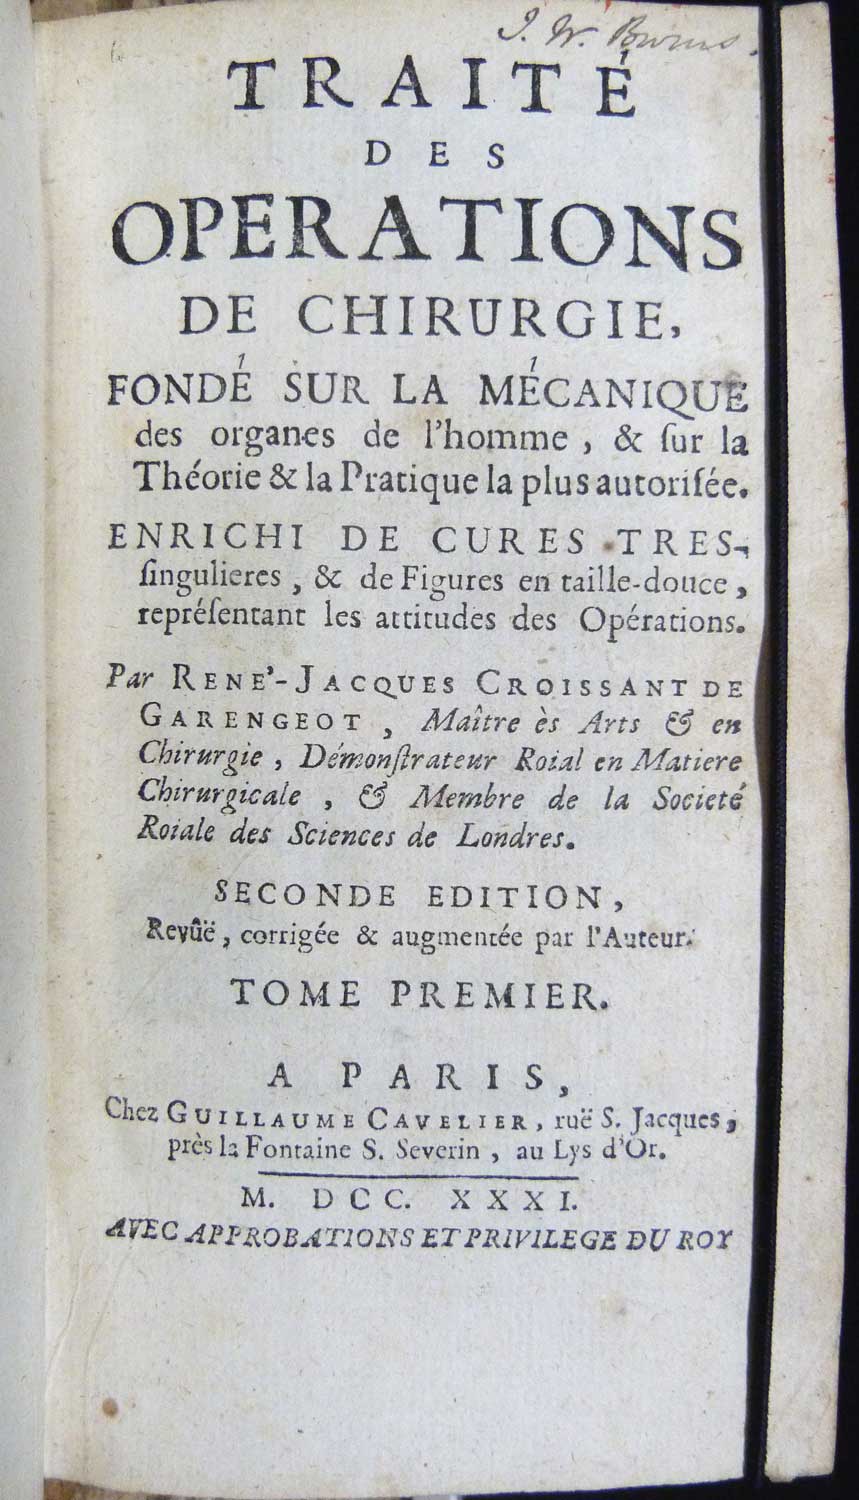 Traite Des Operations Chirurgie Fondé Sur La Mechanique. Two volumes (of three)